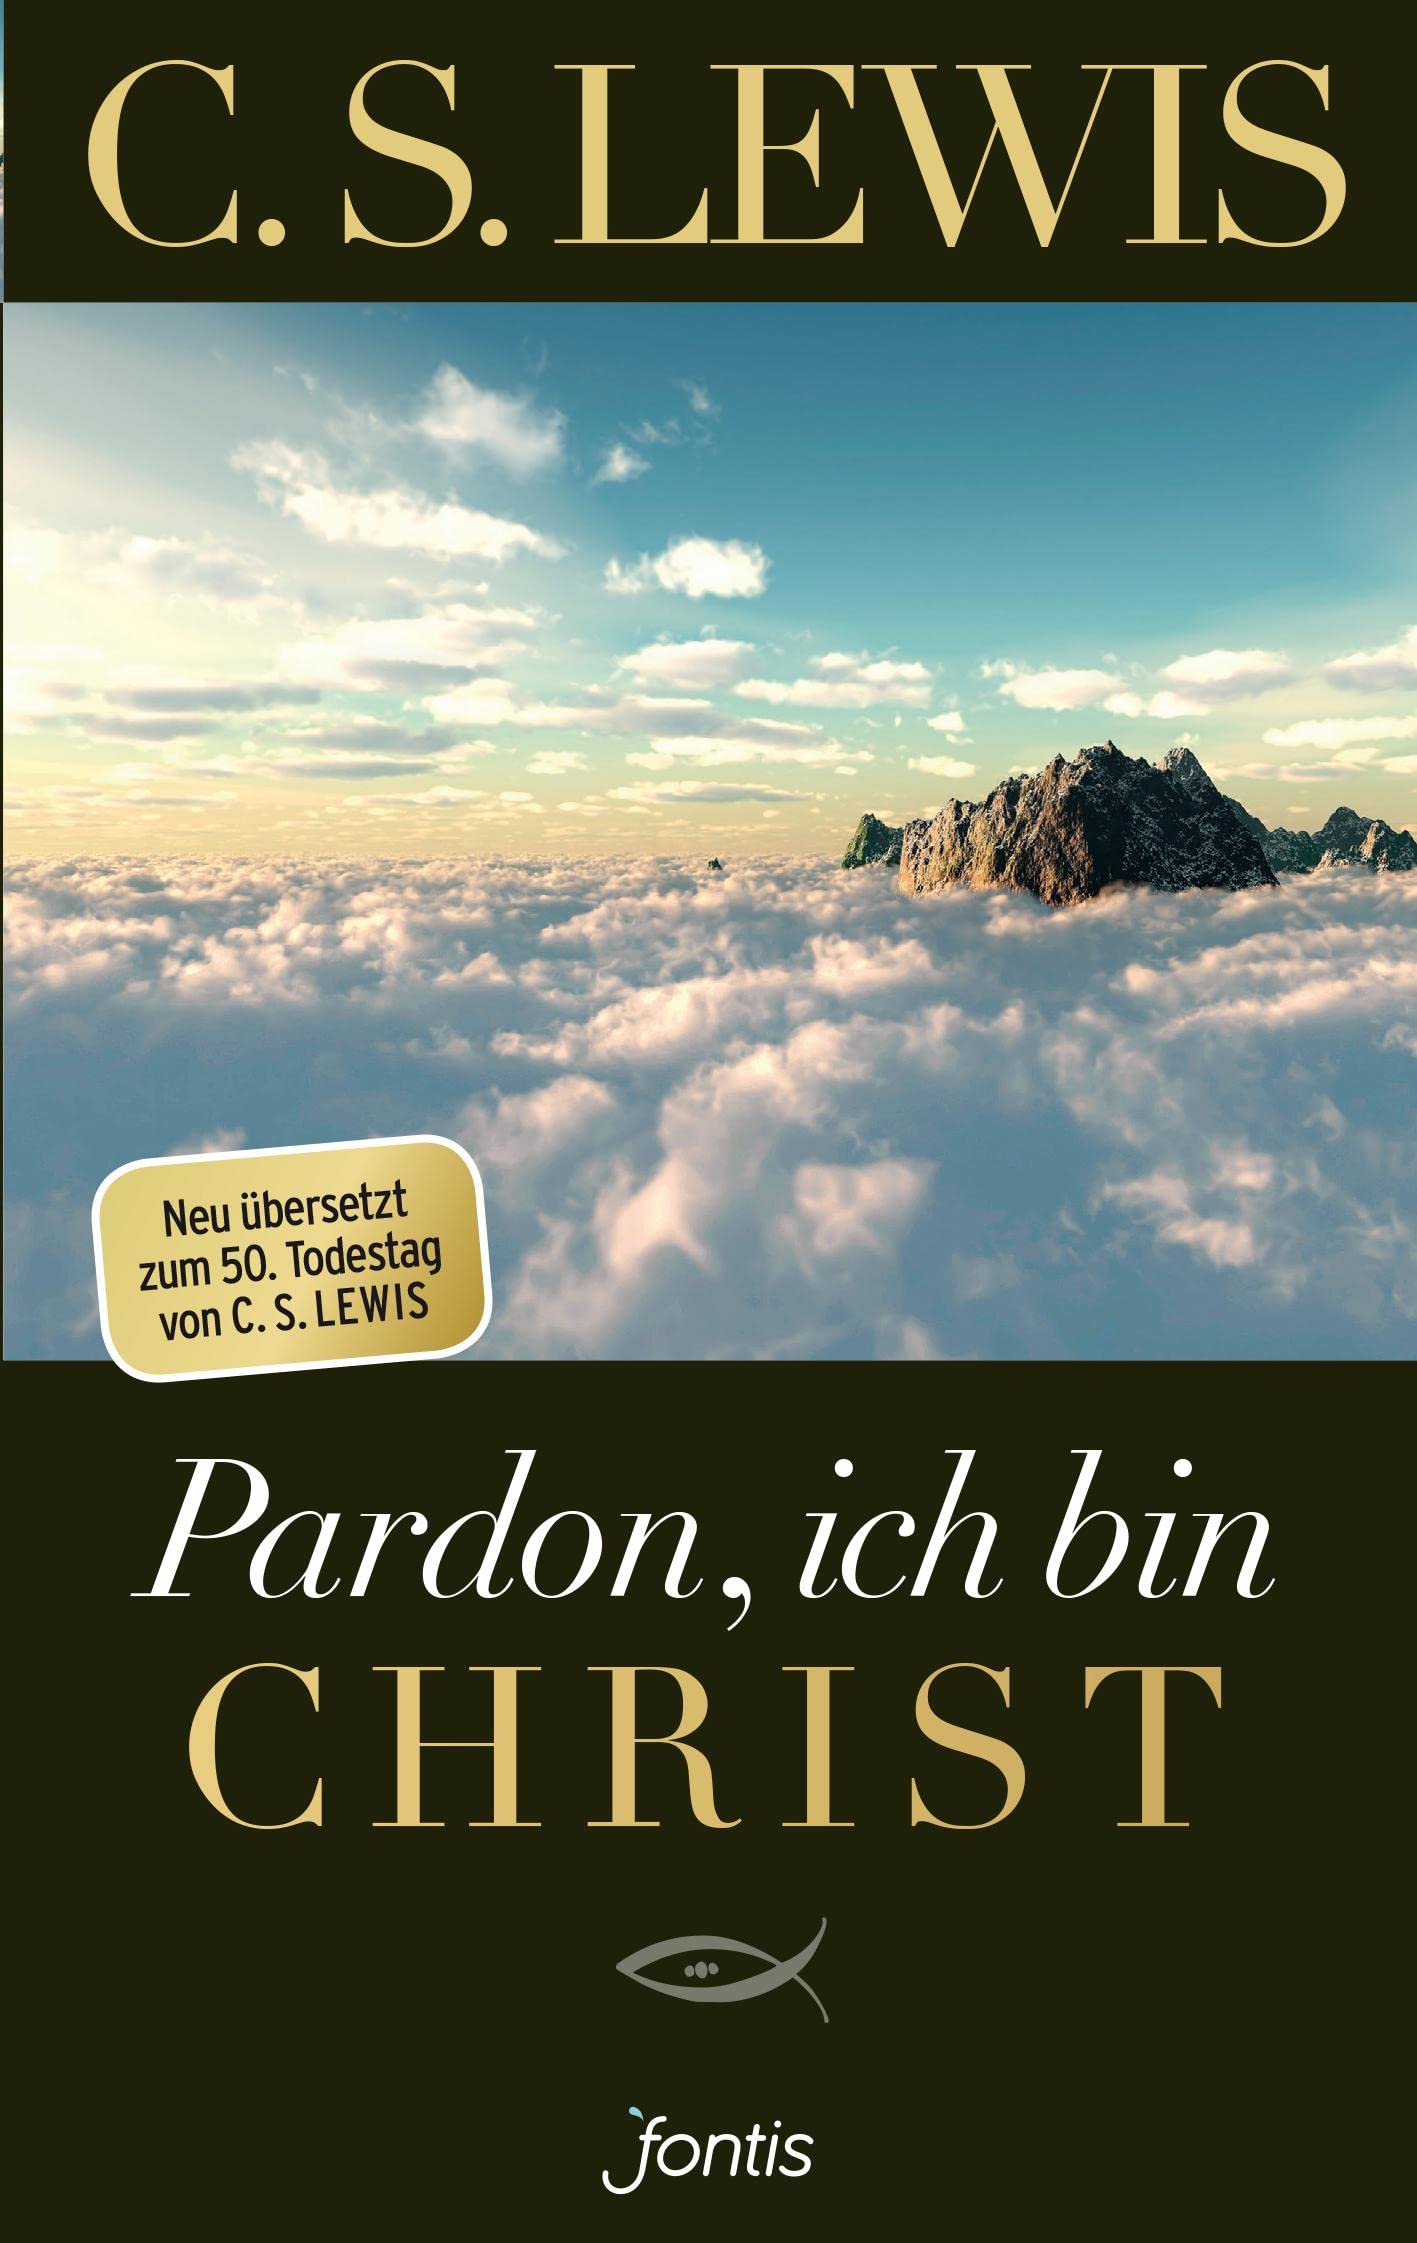 Pardon, ich bin Christ - Gebetshaus Augsburg | Shop